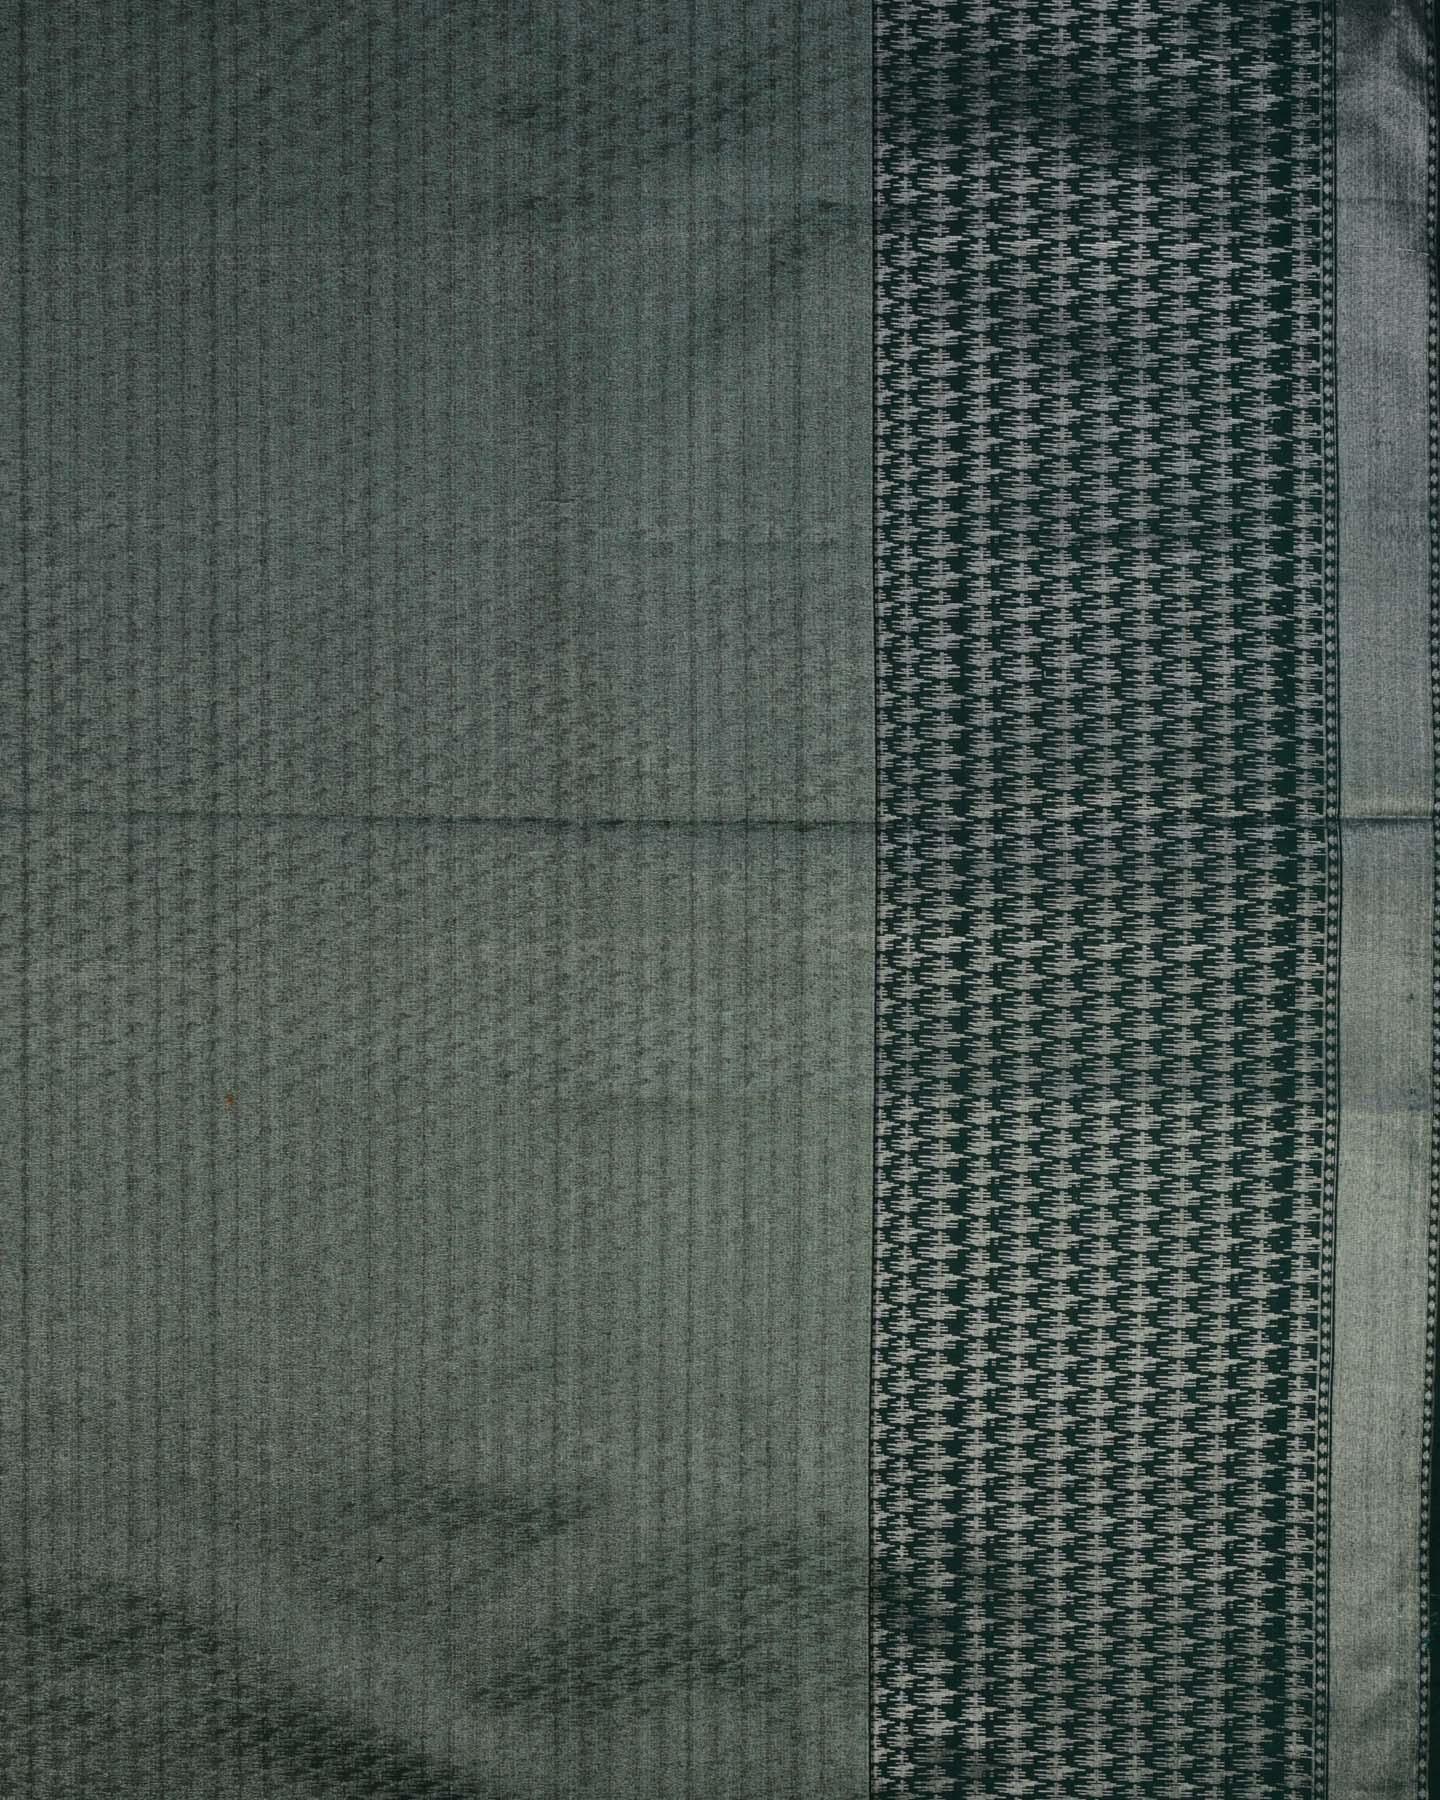 Metallic Green Banarasi Arrowhead Buta Cutwork Brocade Woven Poly Tissue Saree - By HolyWeaves, Benares